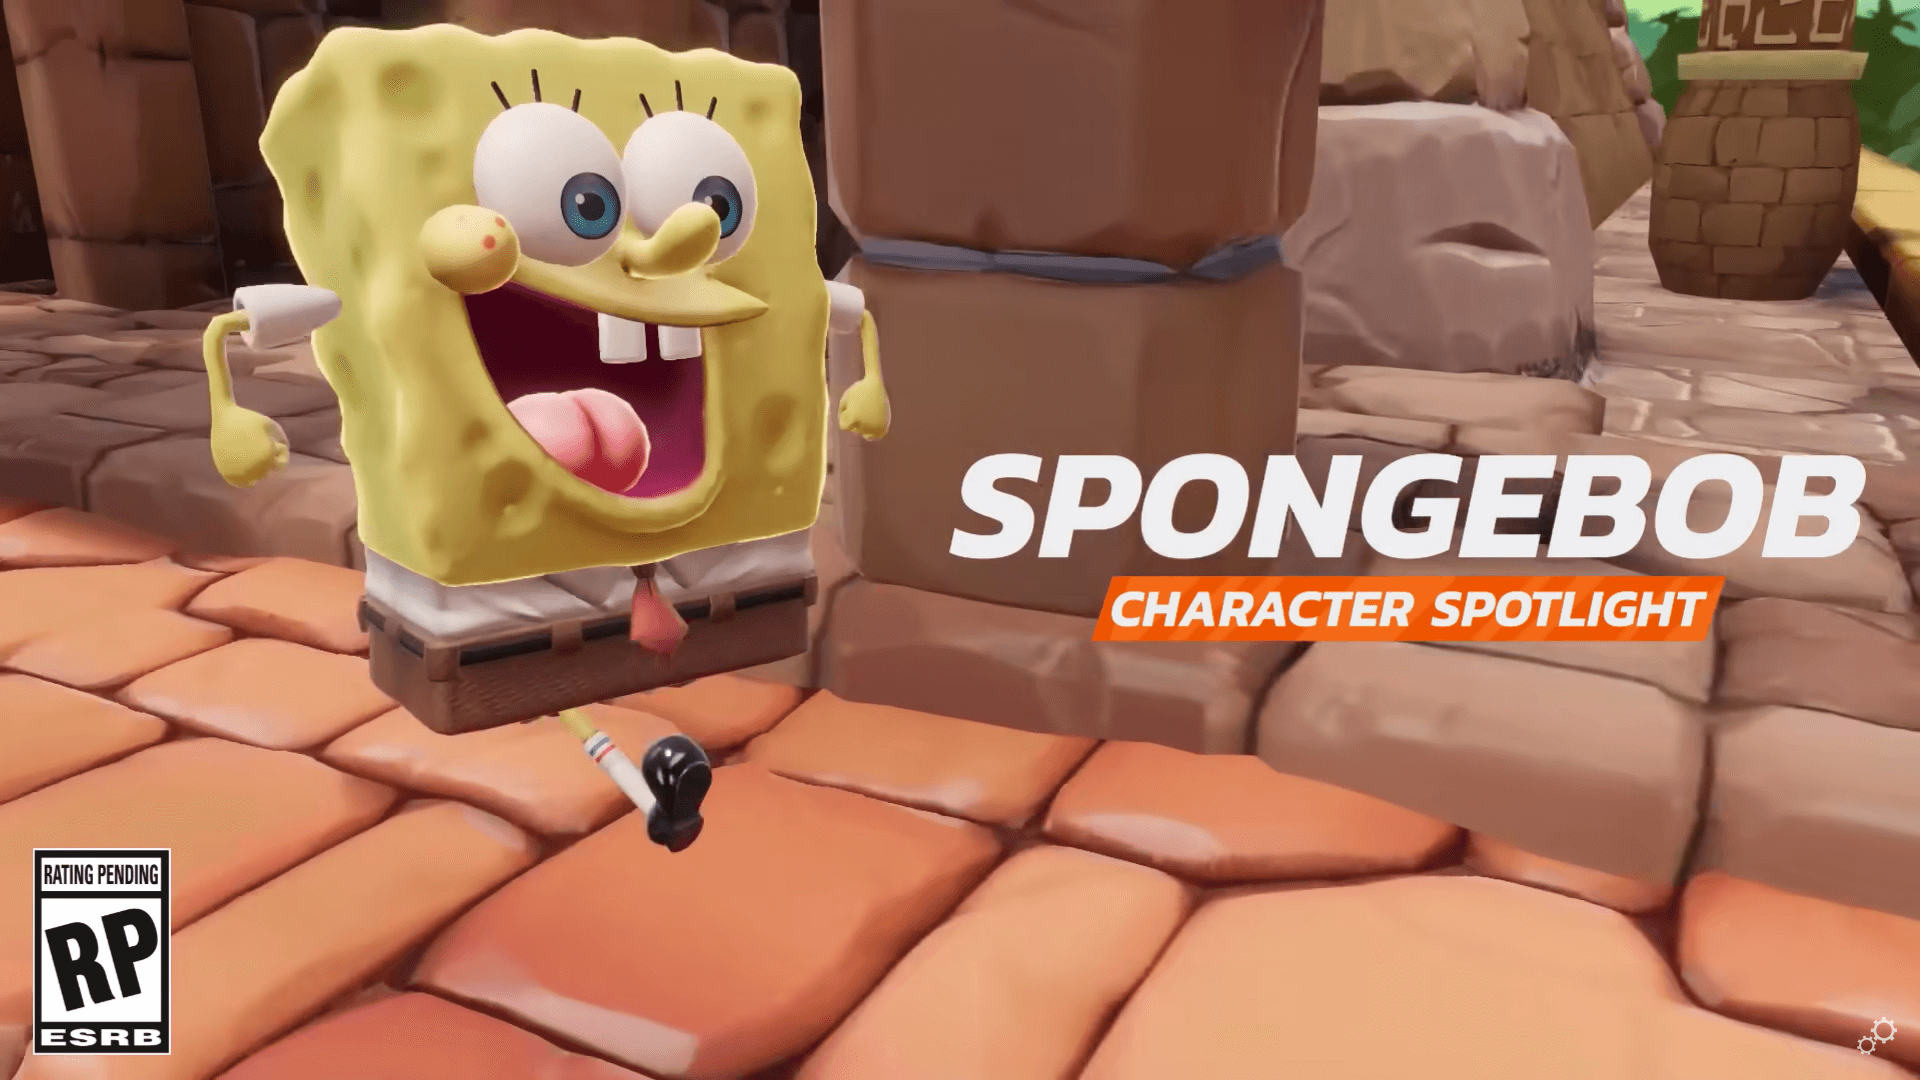 NASB 2 Shares Character Spotlight for SpongeBob